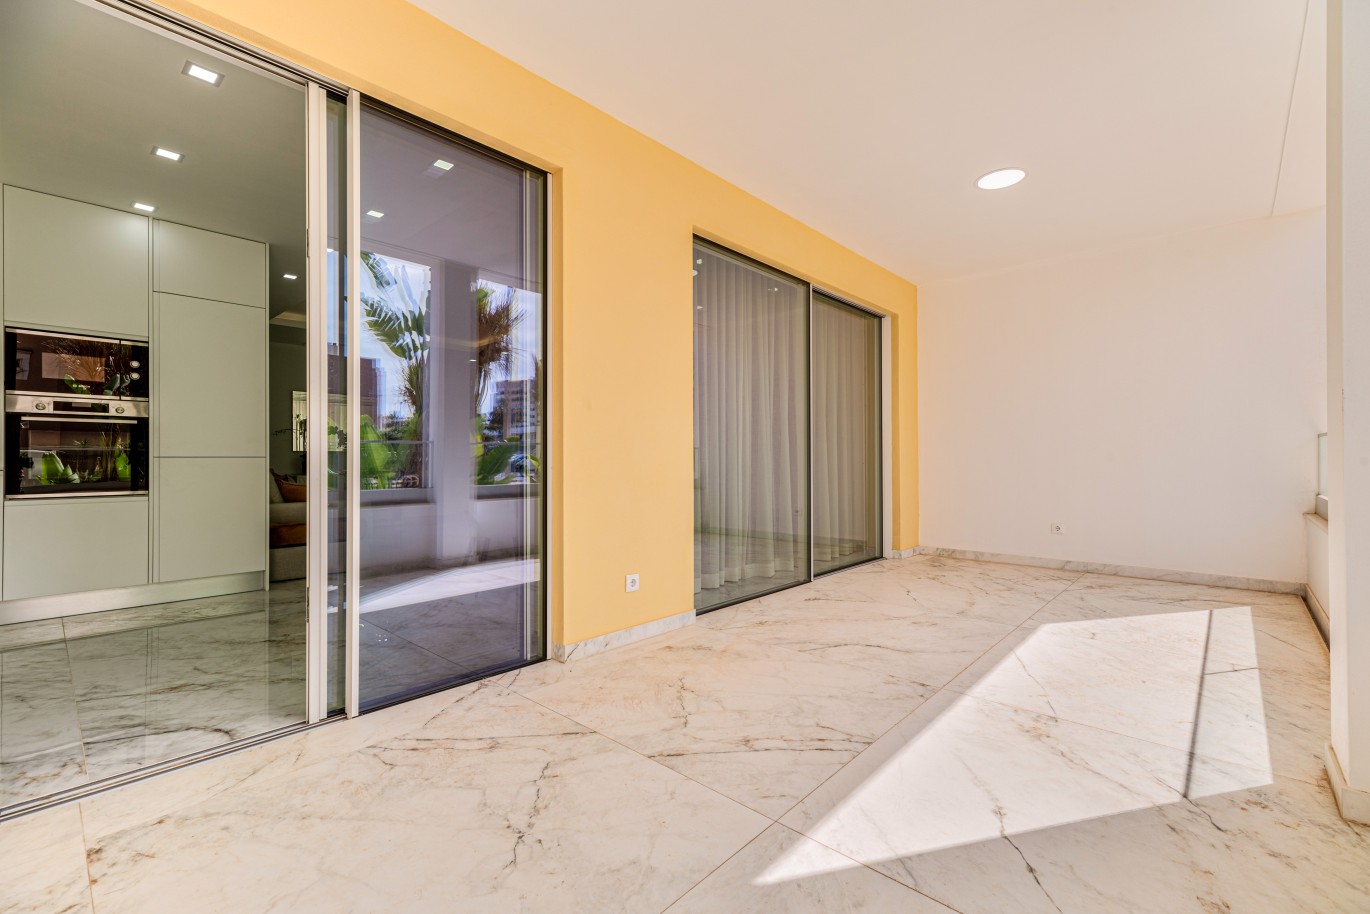 Verkauf einer Wohnung im Bau, mit Terrasse, Lagos, Algarve, Portugal_238258